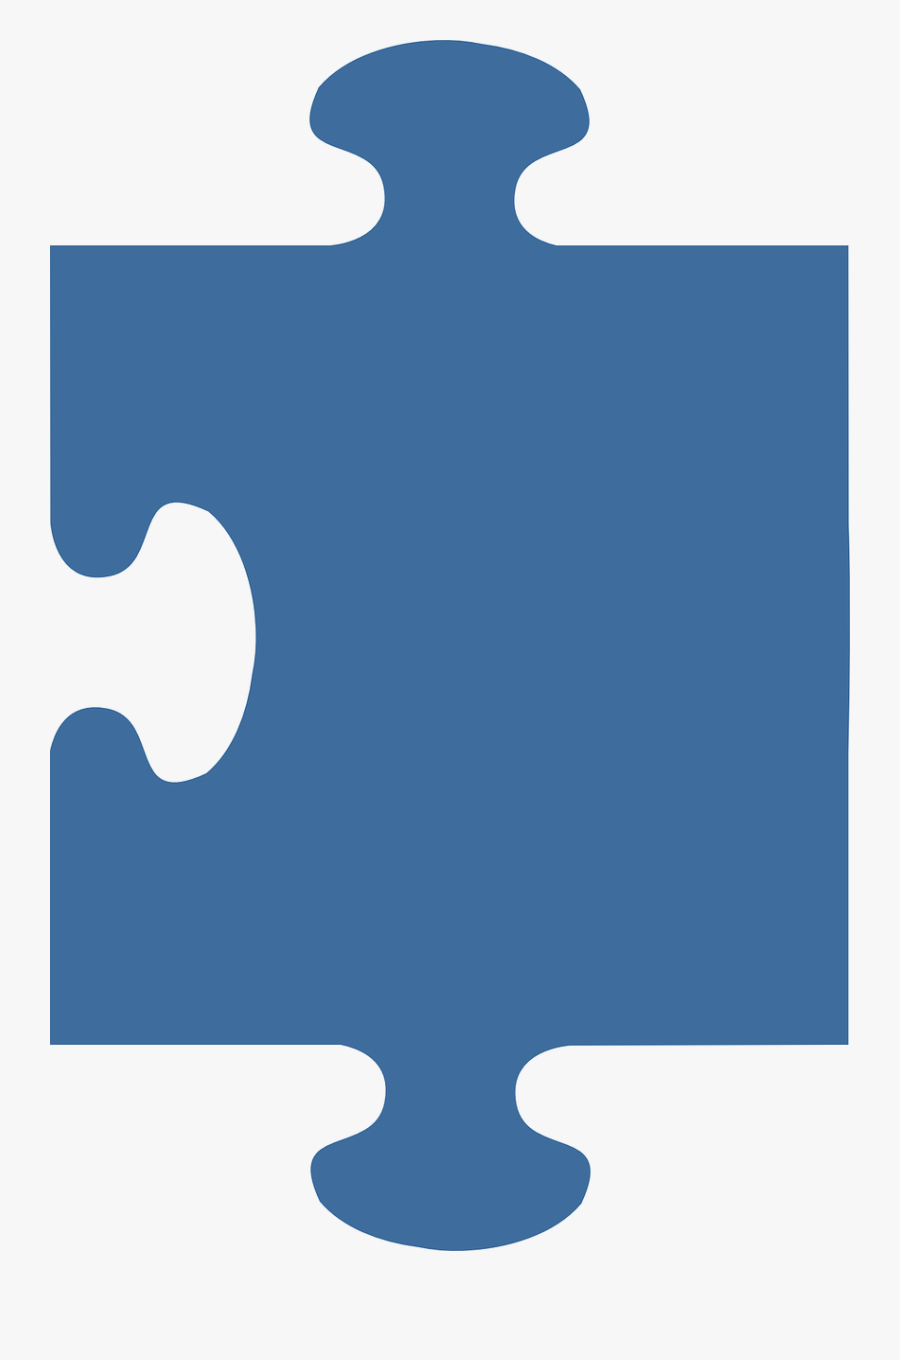 Jigsaw Puzzle Puzzle Piece Free Picture - Edge Puzzle Piece Png, Transparent Clipart